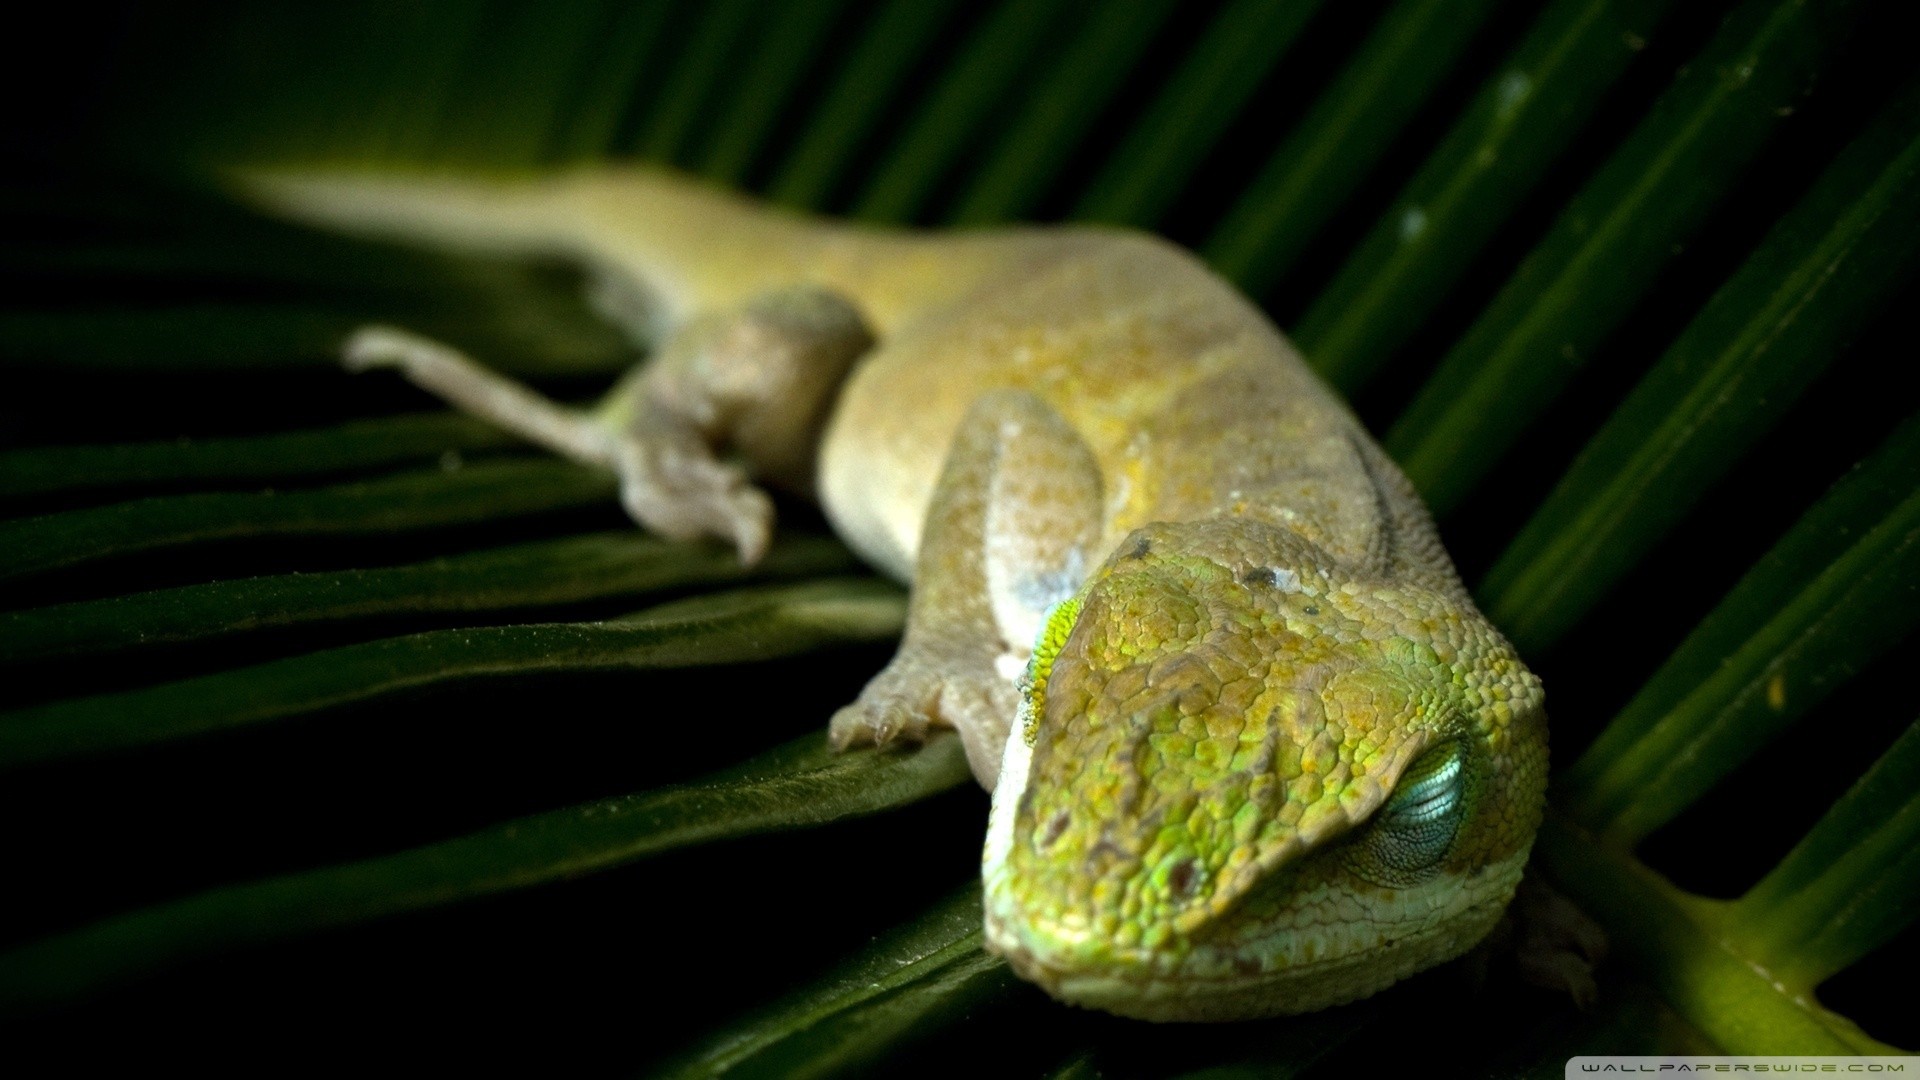 General 1920x1080 sleeping lizards leaves reptiles macro blurred wildlife animals